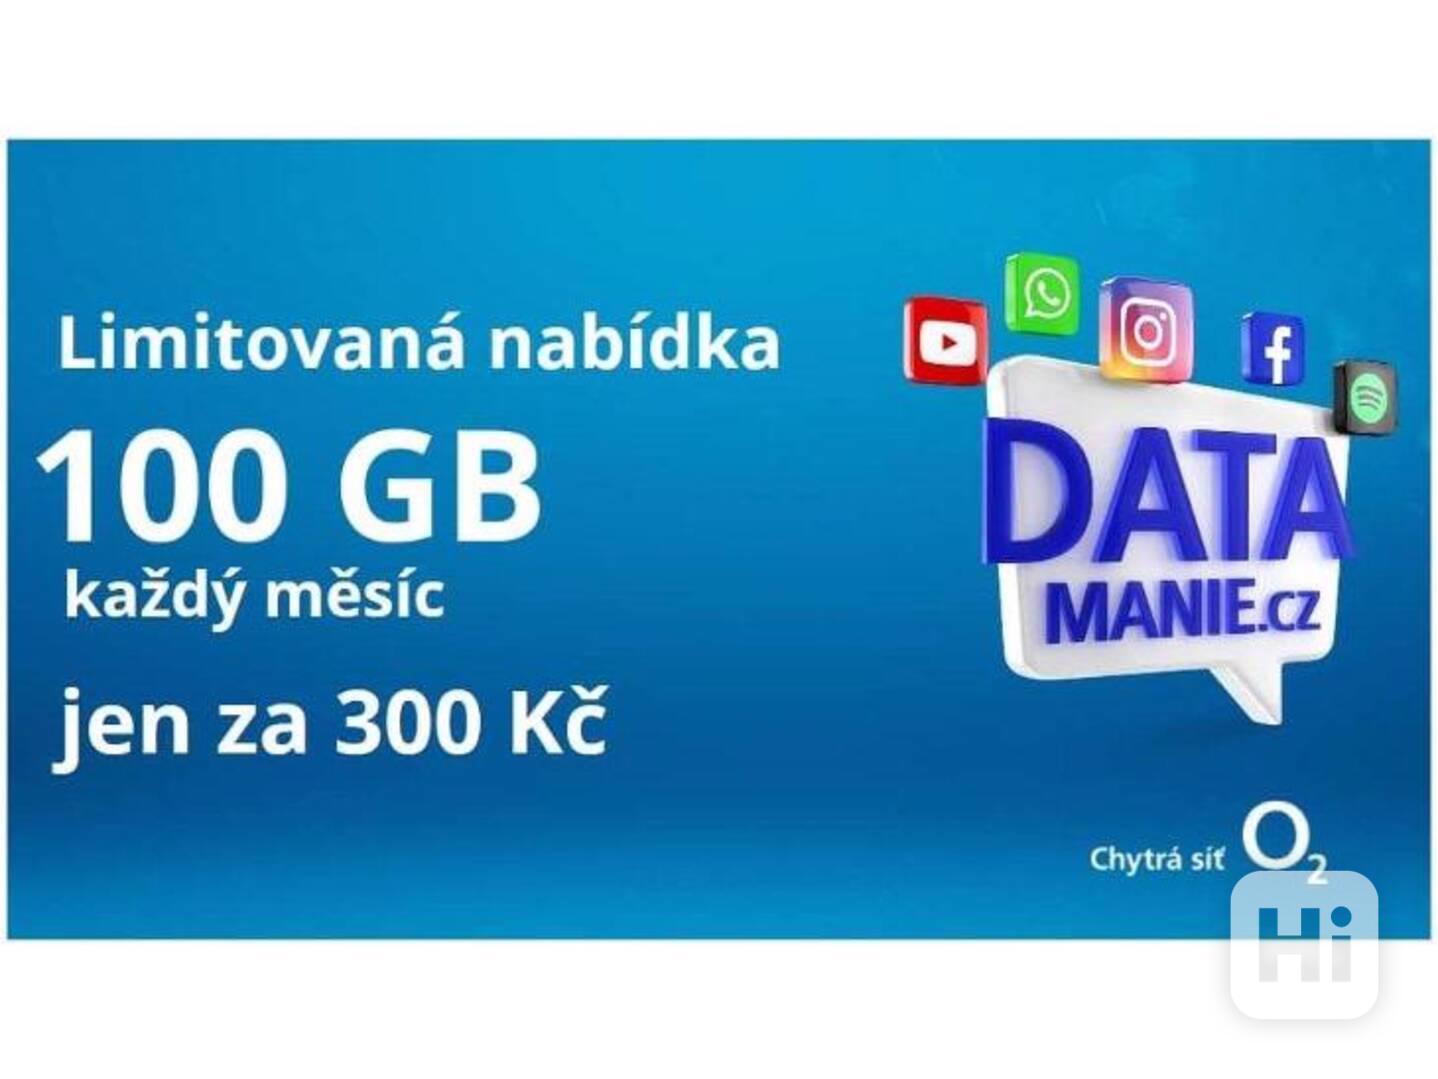 SIM O2 Datamanie 100 GB za 300 Kč měsíčně - foto 1